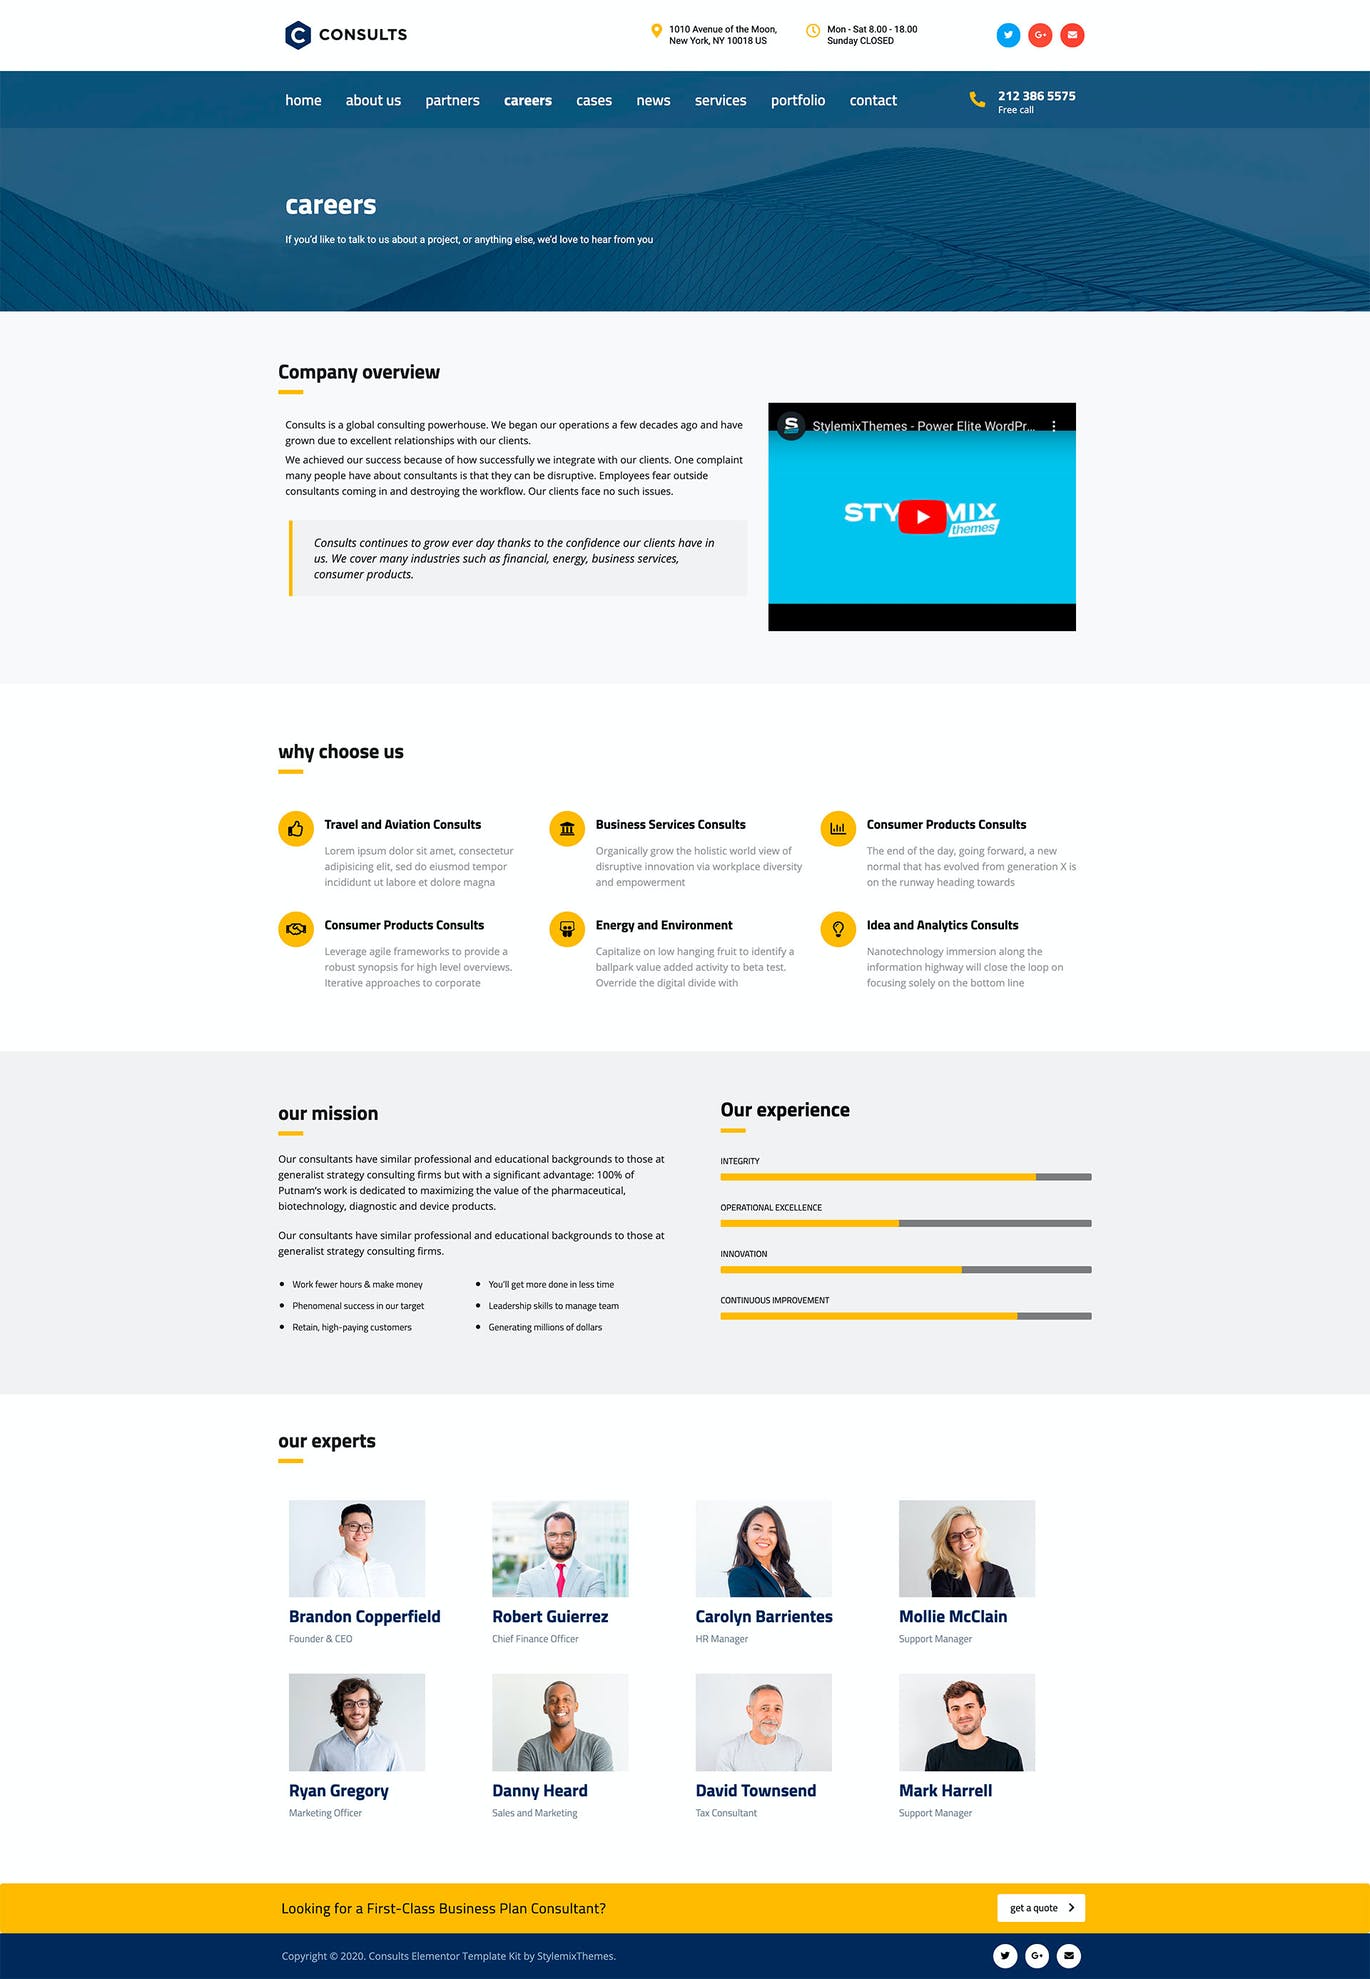 独特精美咨询业务专业类元素WordPress模板套件 Consults – Business Elementor Template Kit设计素材模板